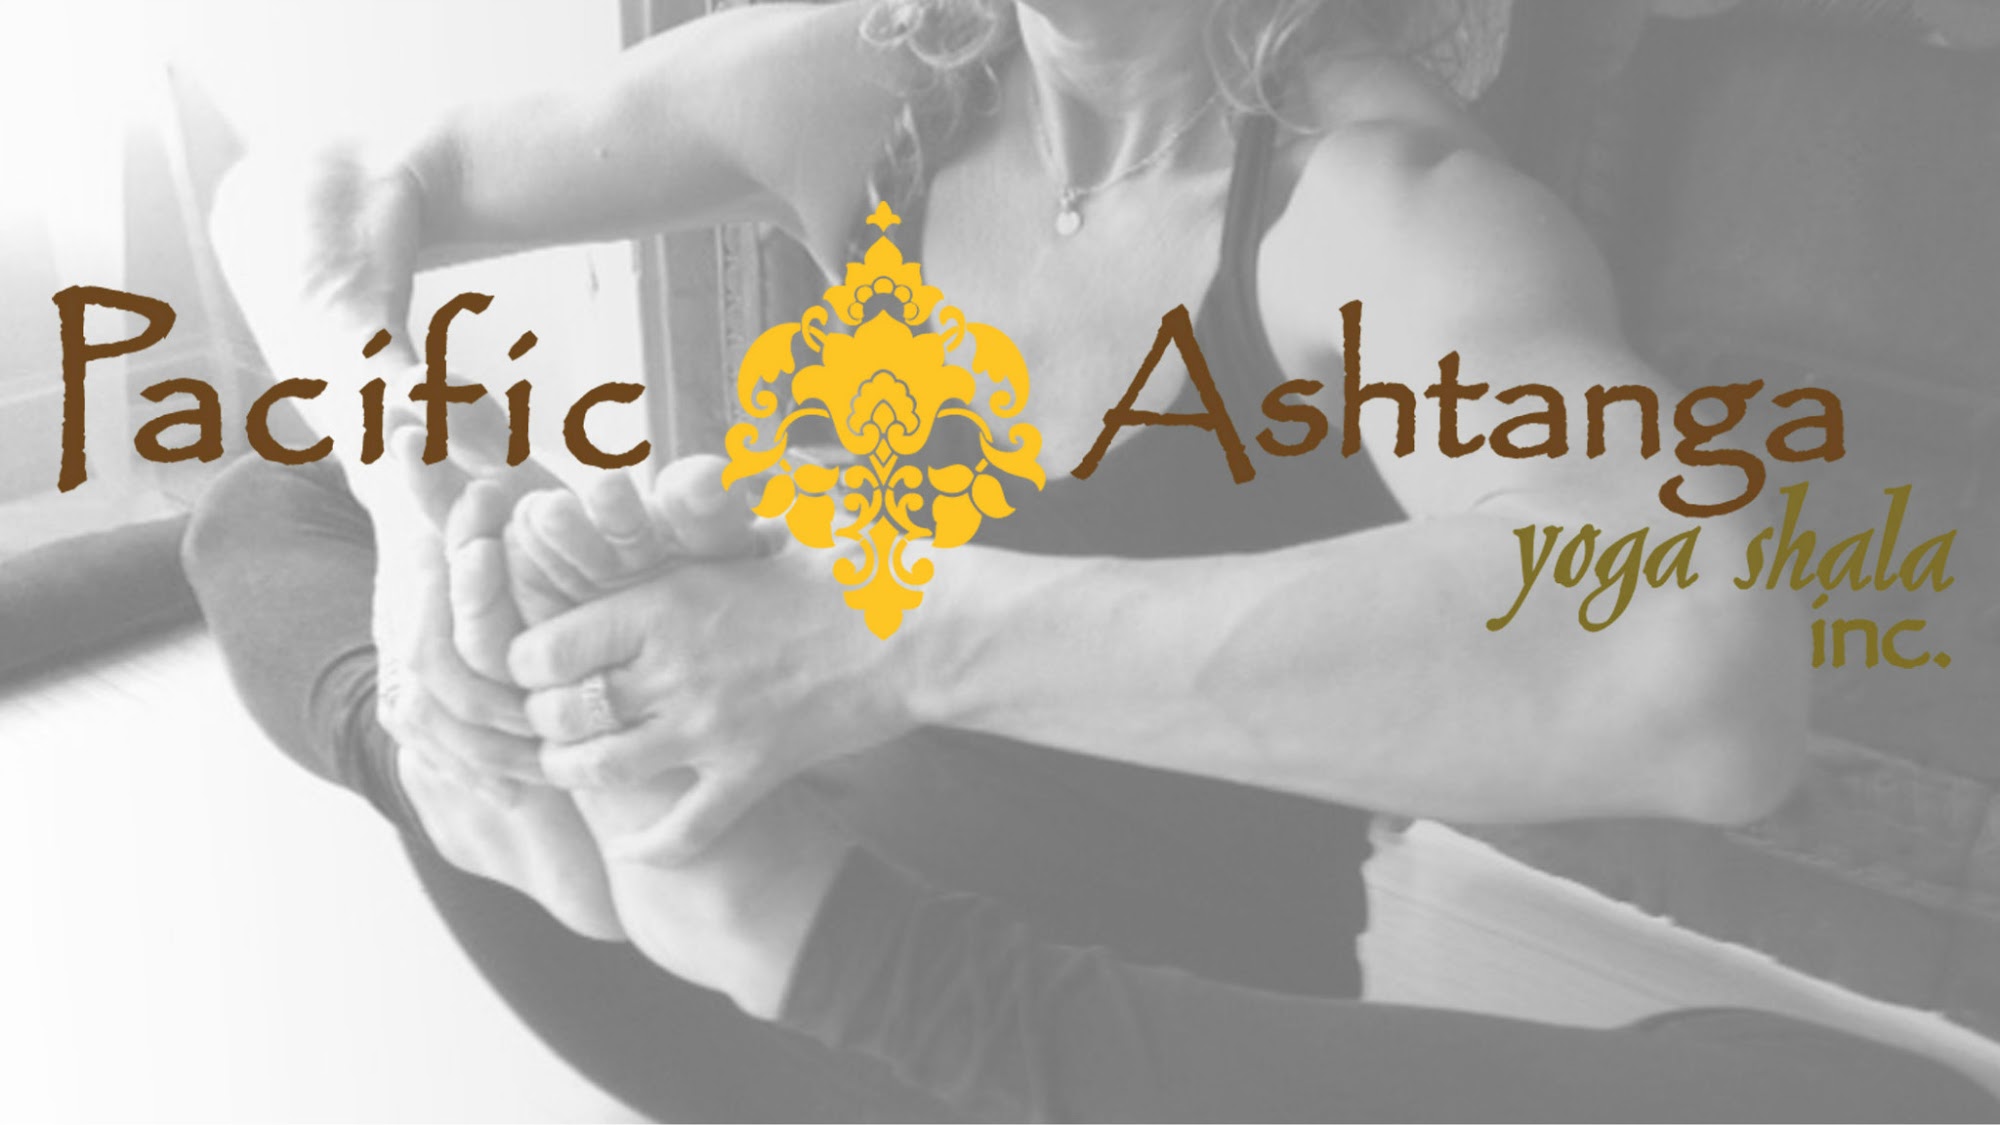 Pacific Ashtanga Yoga